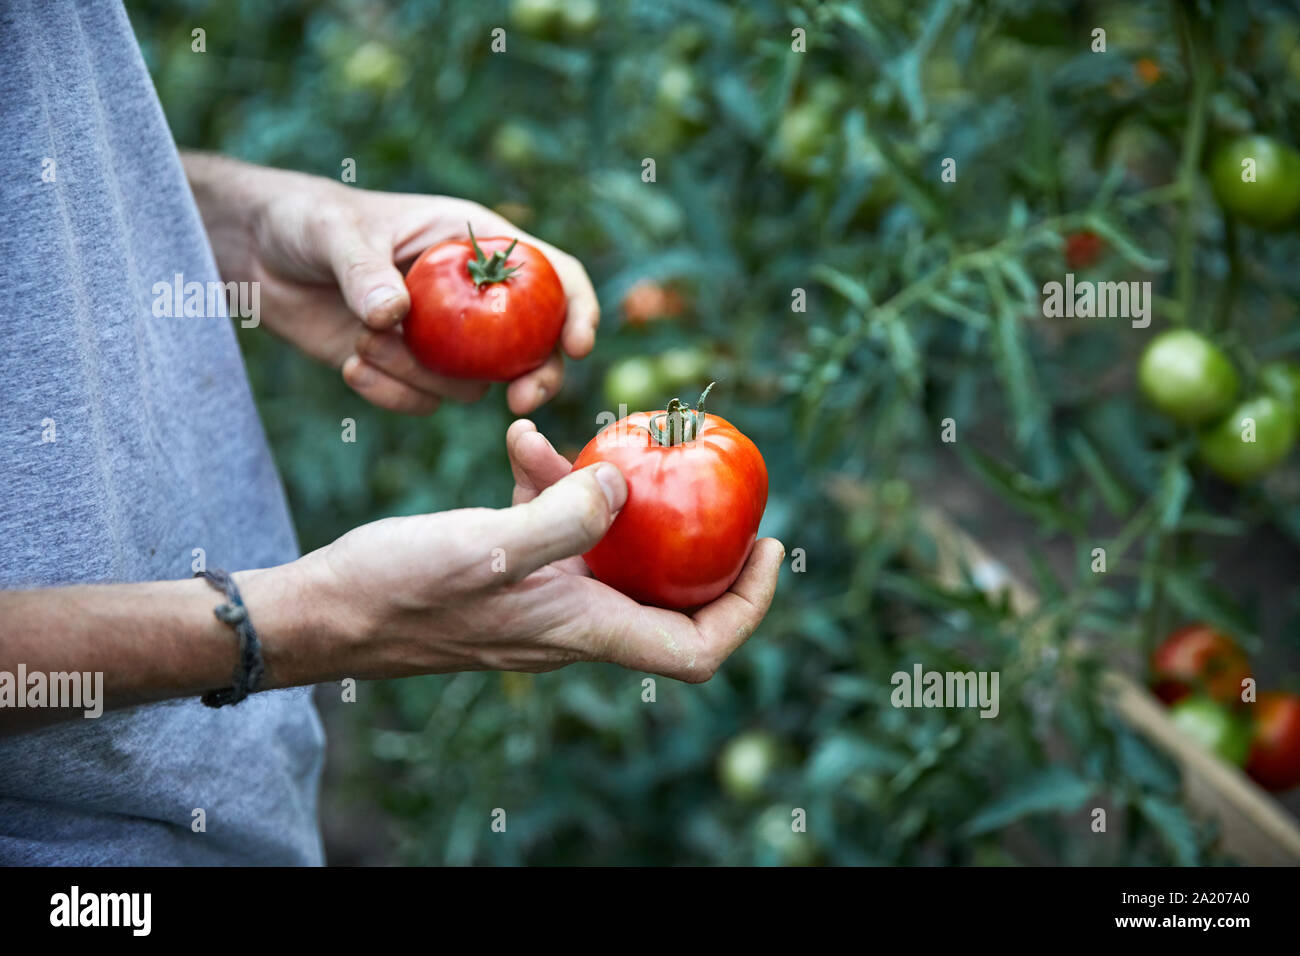 Bauer ist die Kommissionierung rote reife Tomaten in seinem Gewächshaus. Natürliche Landwirtschaft und gesunde Ernährung Konzept Stockfoto